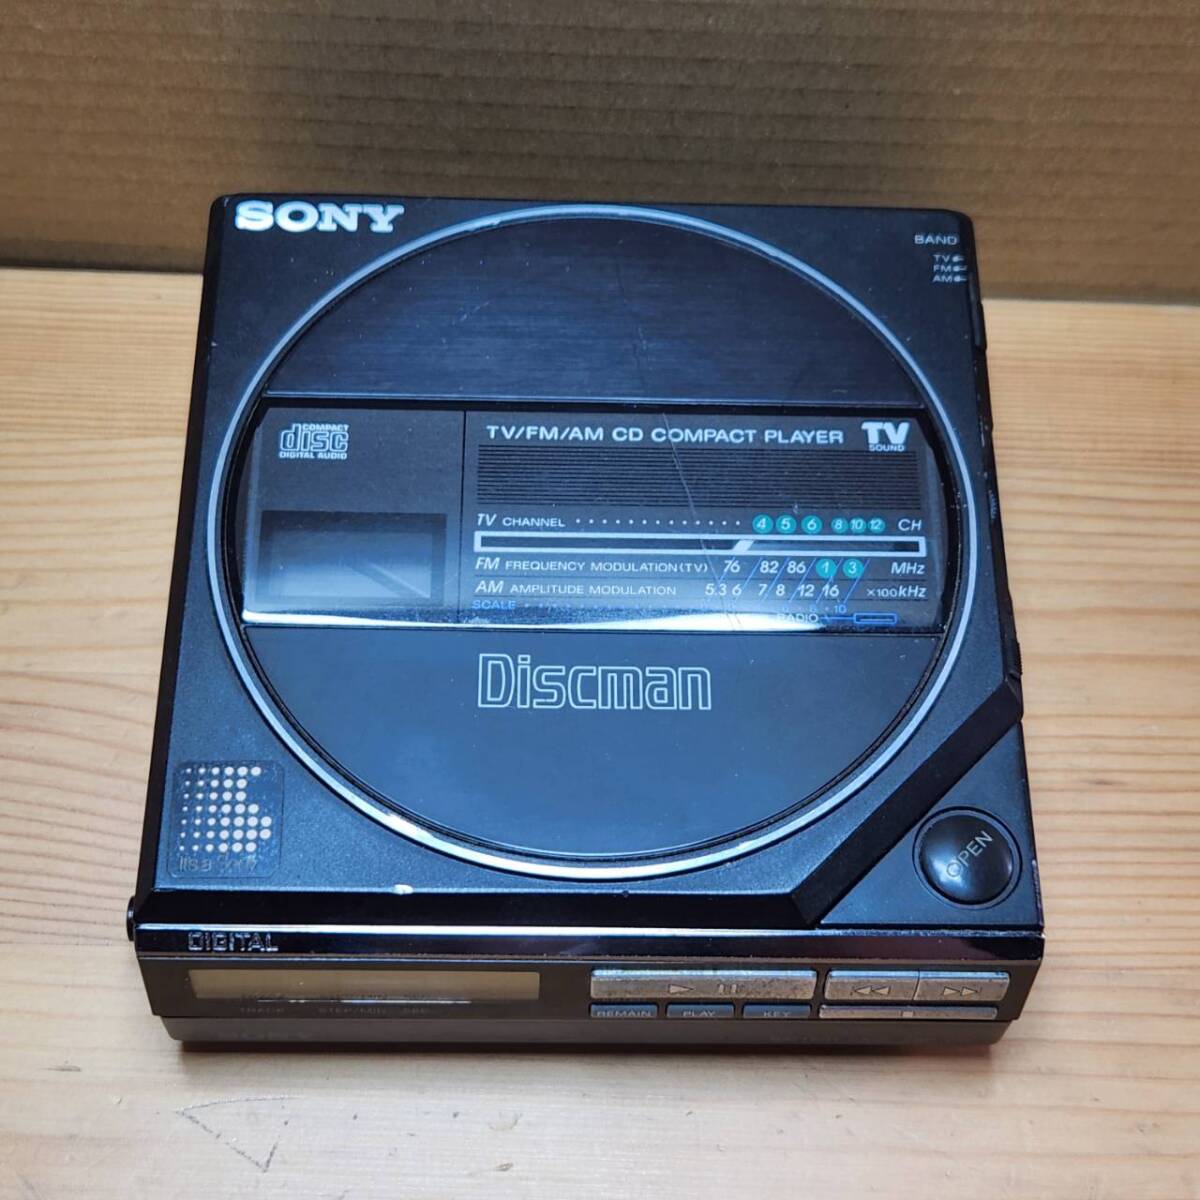 ☆2点セット SONY ソニー Discman ディスクマン D-55T + バッテリーケース EBP-380 ポータブル CDプレイヤー(中古品/現状品/保管品)☆の画像2